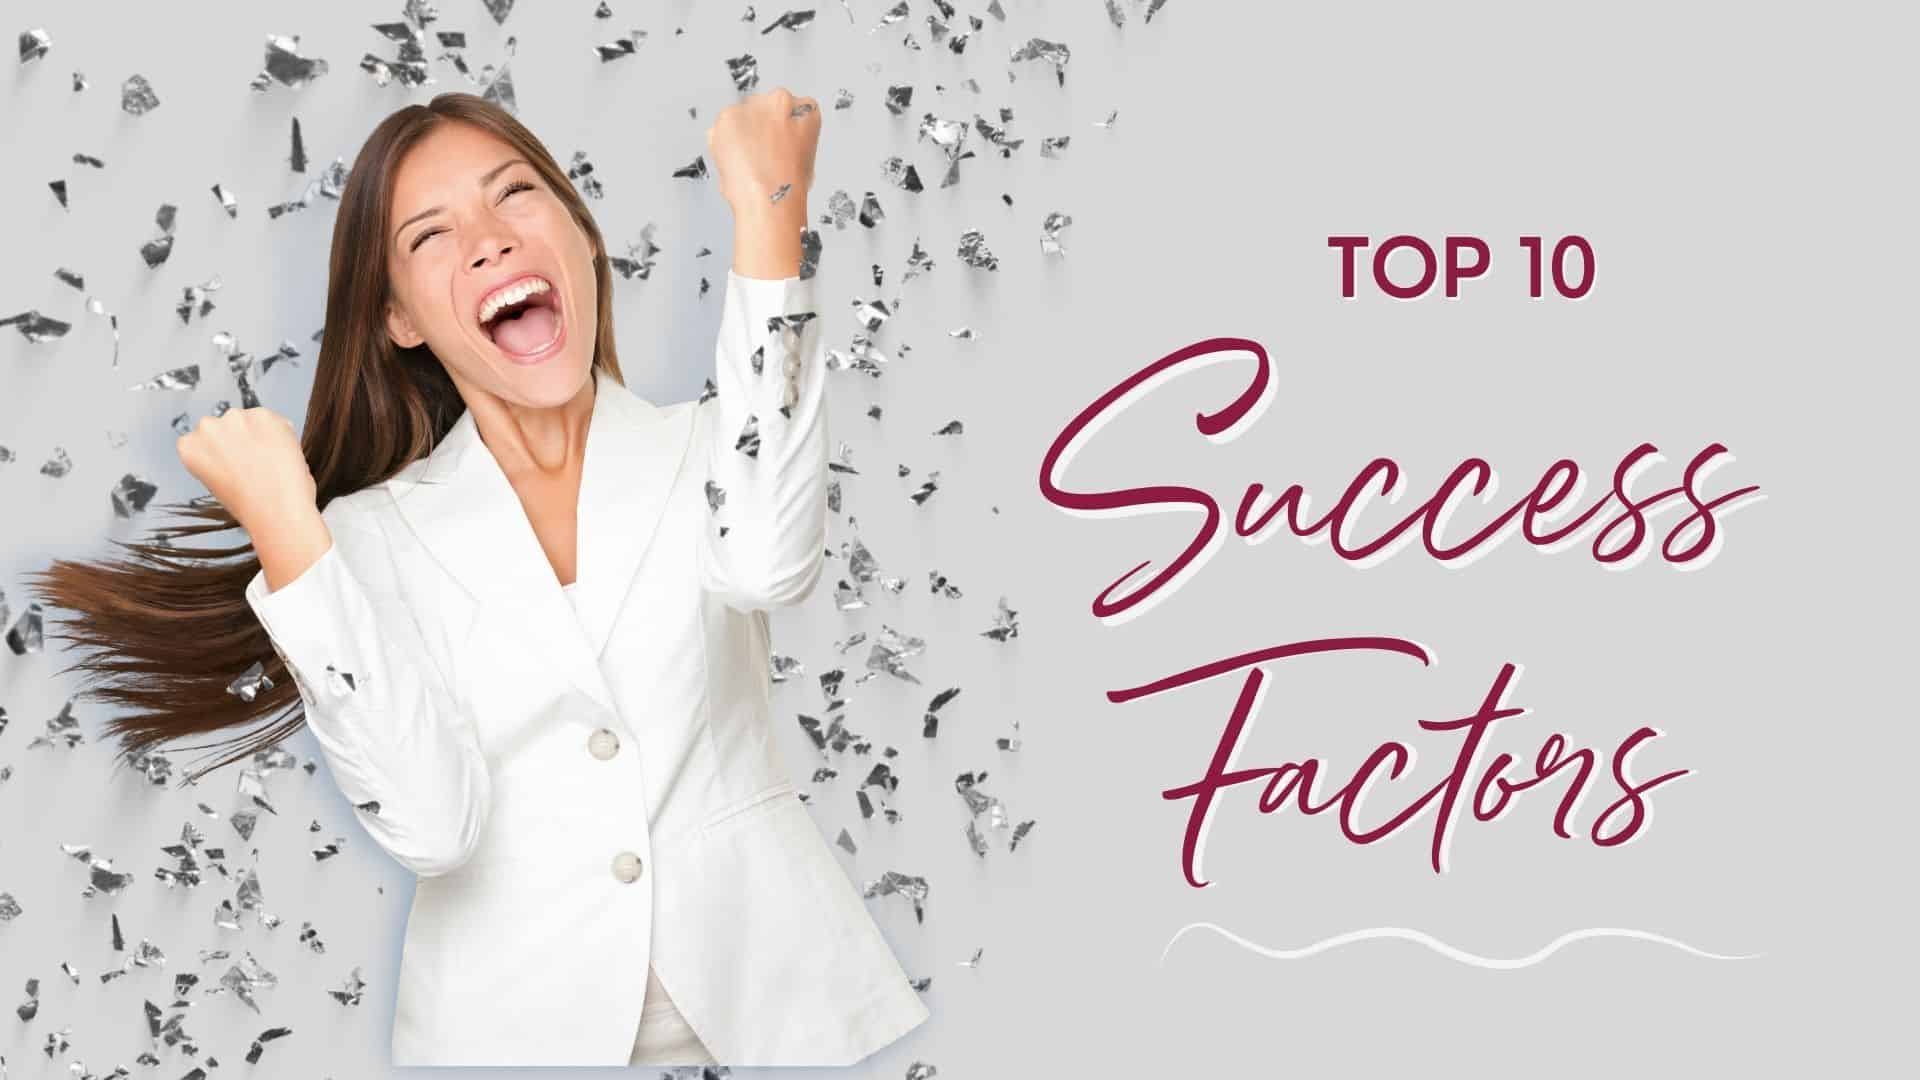 Top 10 Success Factors